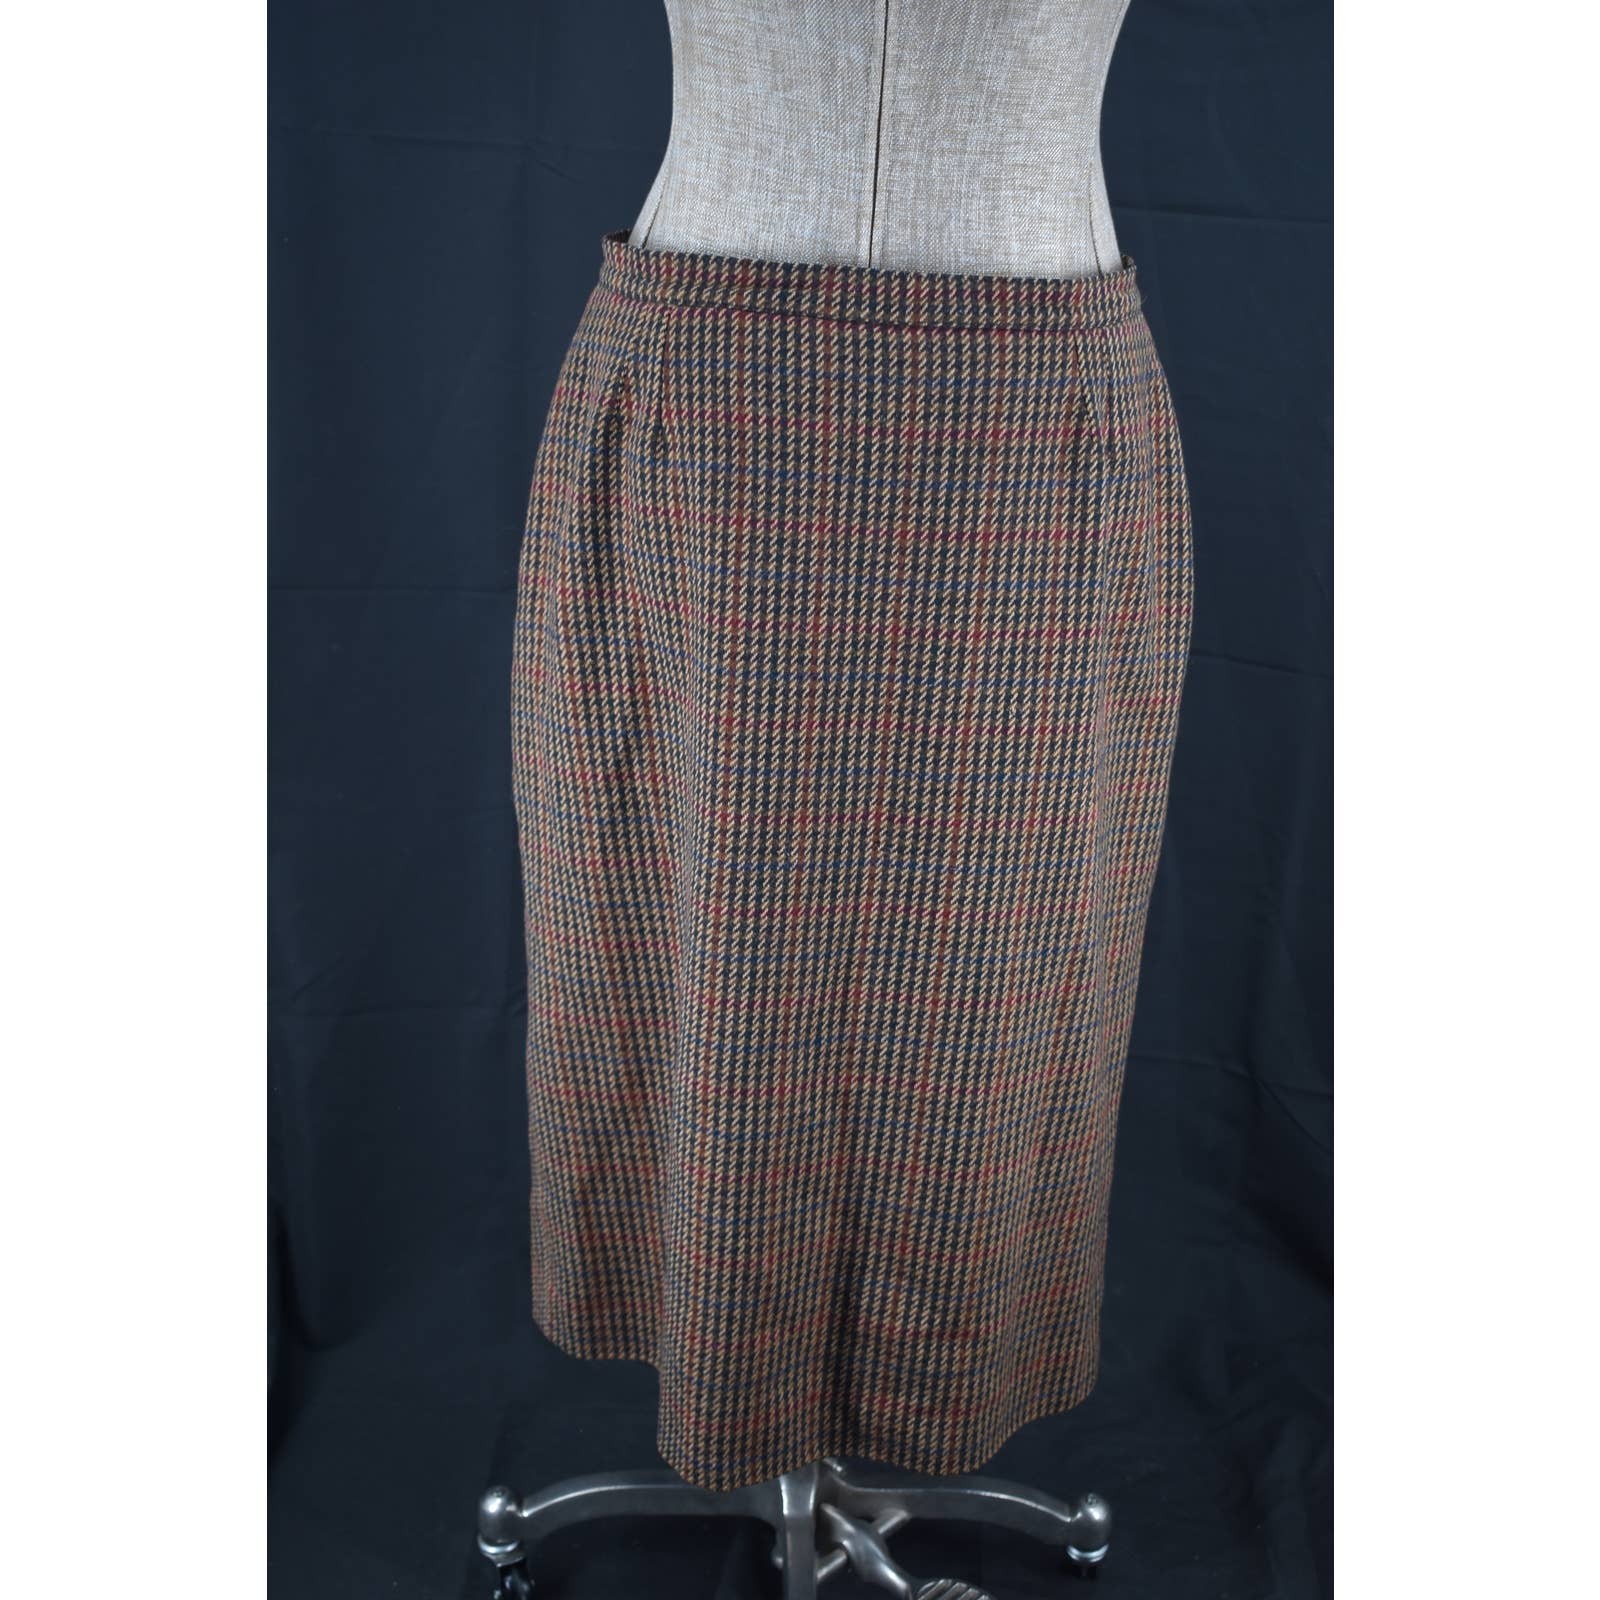 Vintage Jimmy Hourihan Wool Irish Tweed Skirt - 14